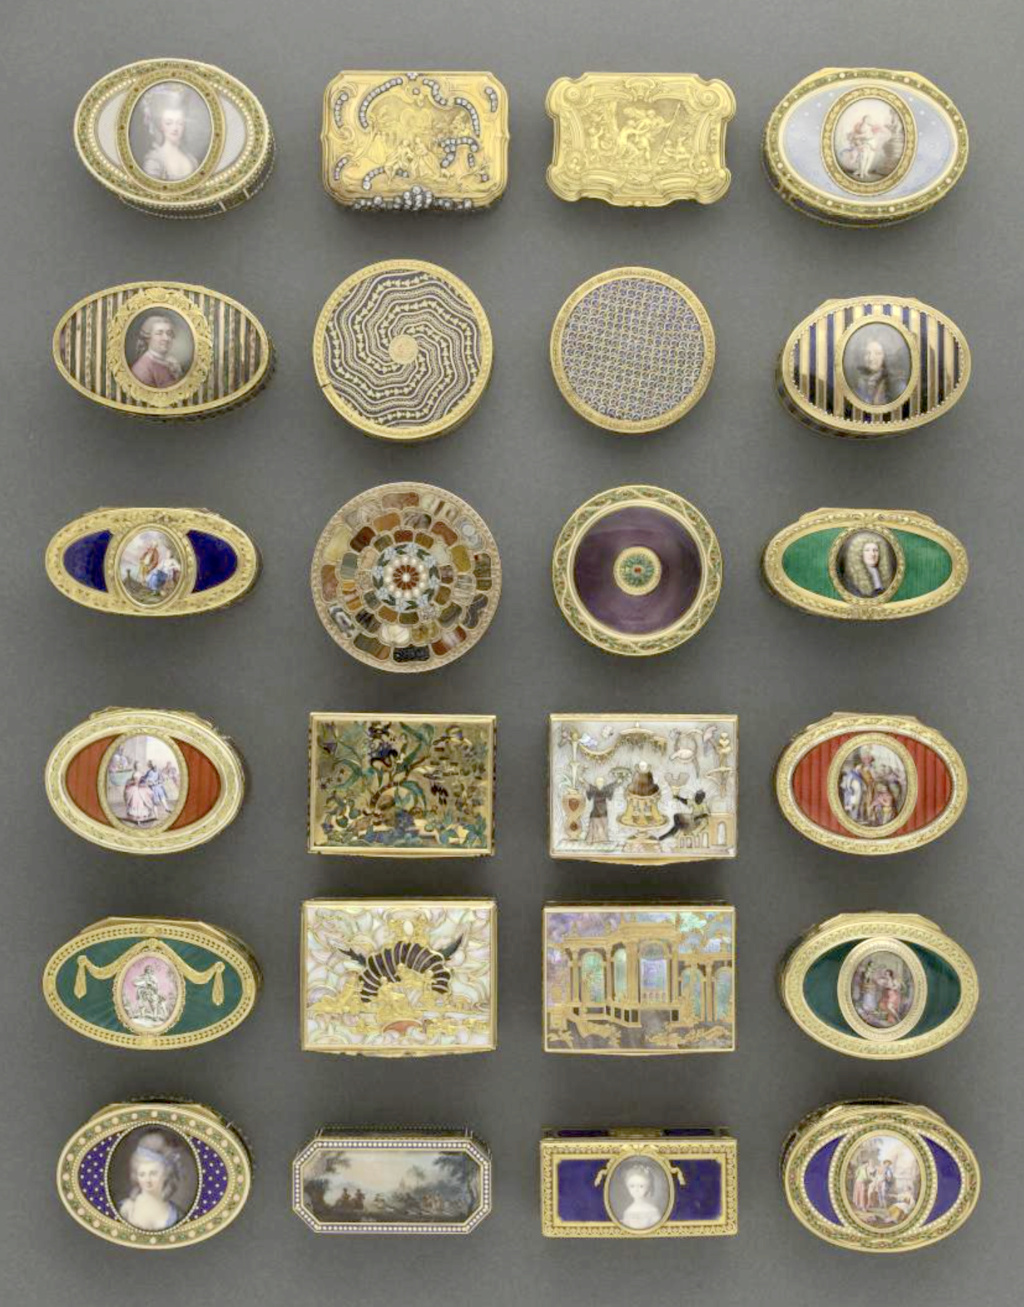 Exposition : Luxe de poche - Petits objets précieux au siècle des Lumières. Musée Cognacq-Jay Capt1481